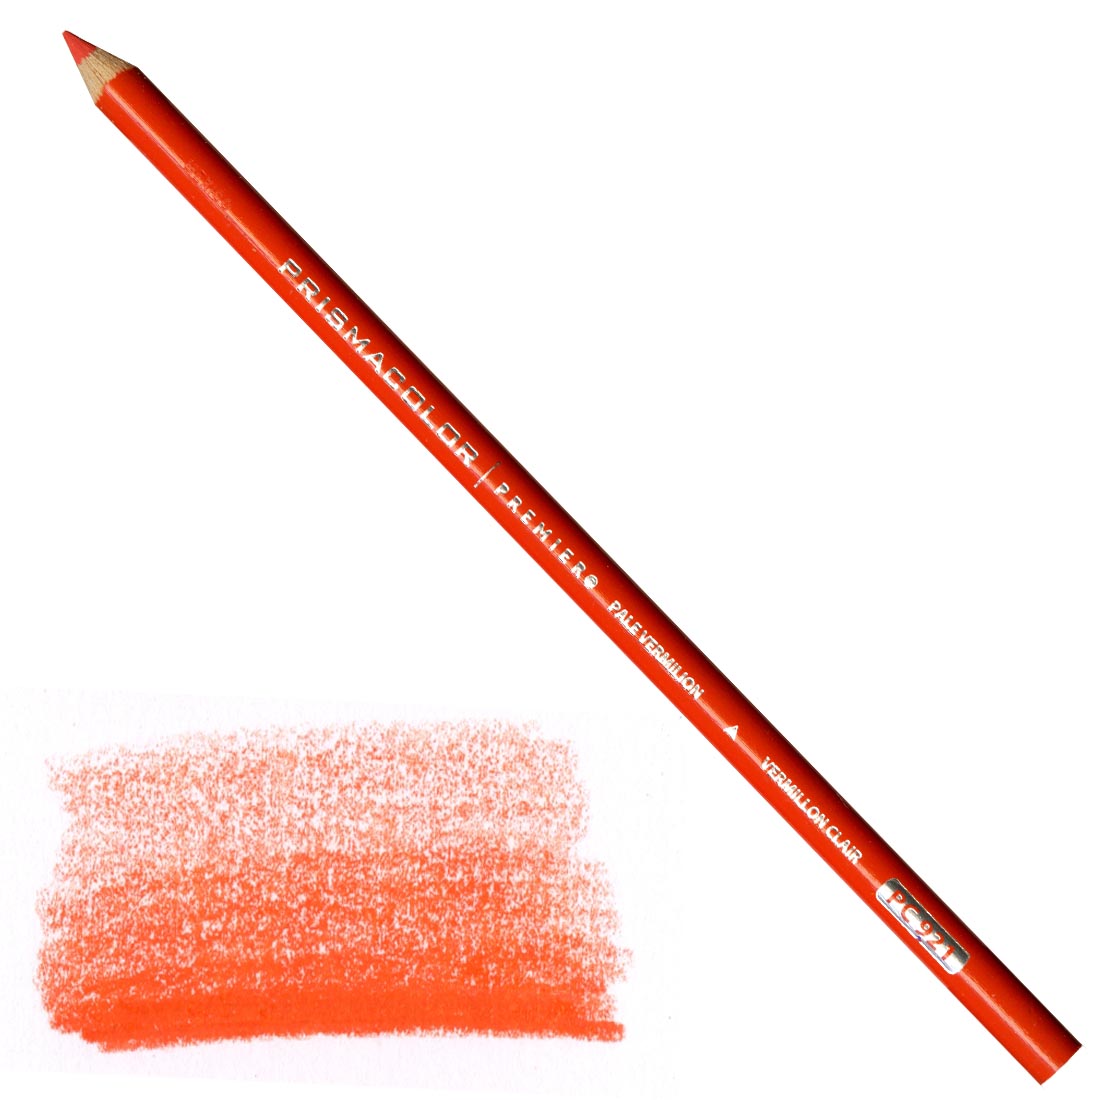 Pale Vermilion Prismacolor Premier Colored Pencil with a sample colored swatch